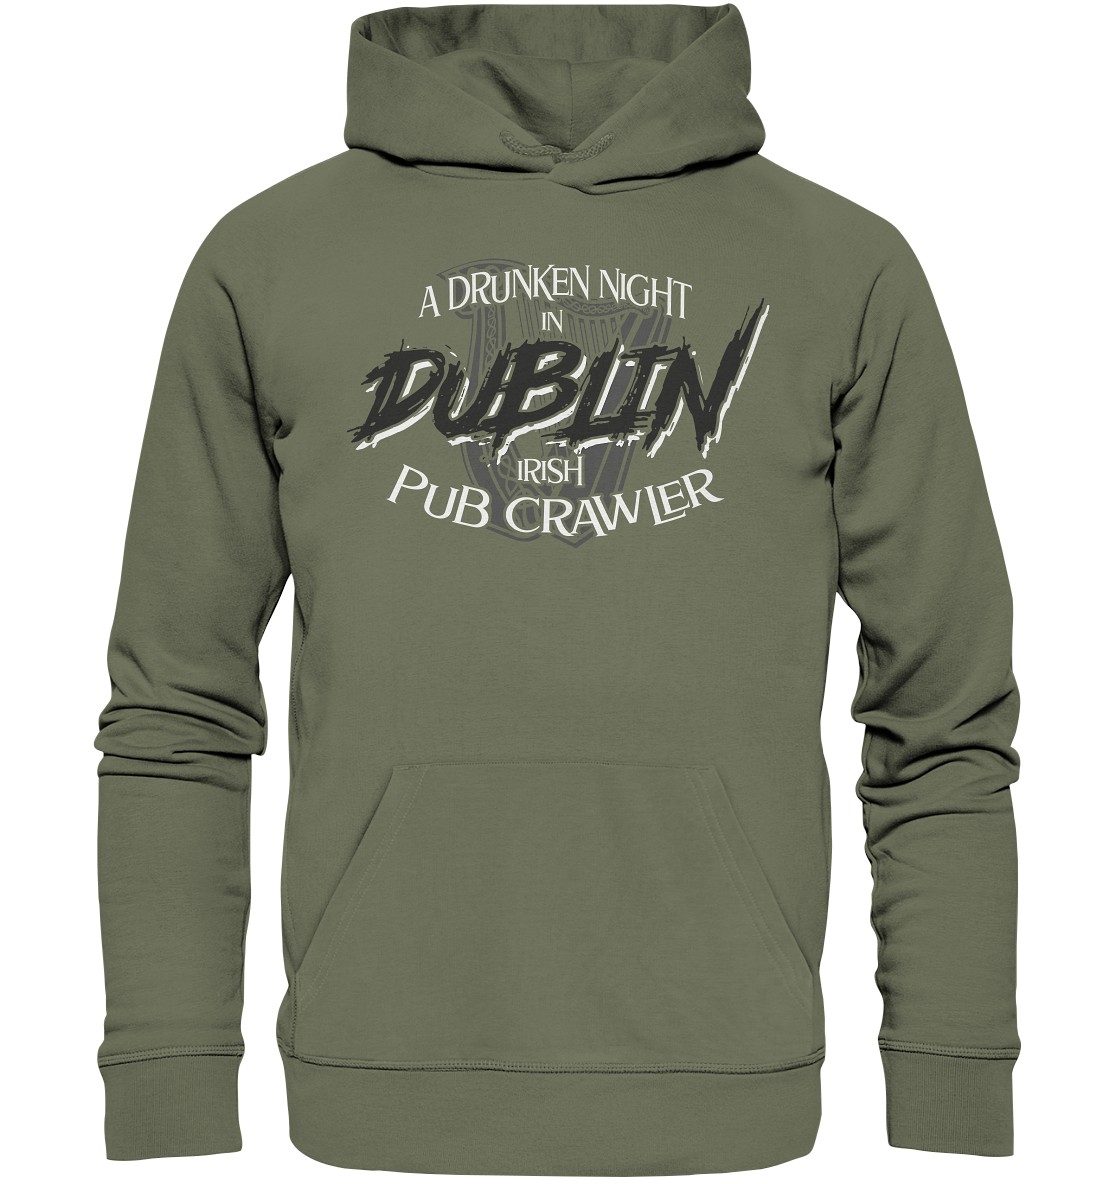 A Drunken Night In Dublin "Irish Pub Crawler" - Premium Unisex Hoodie